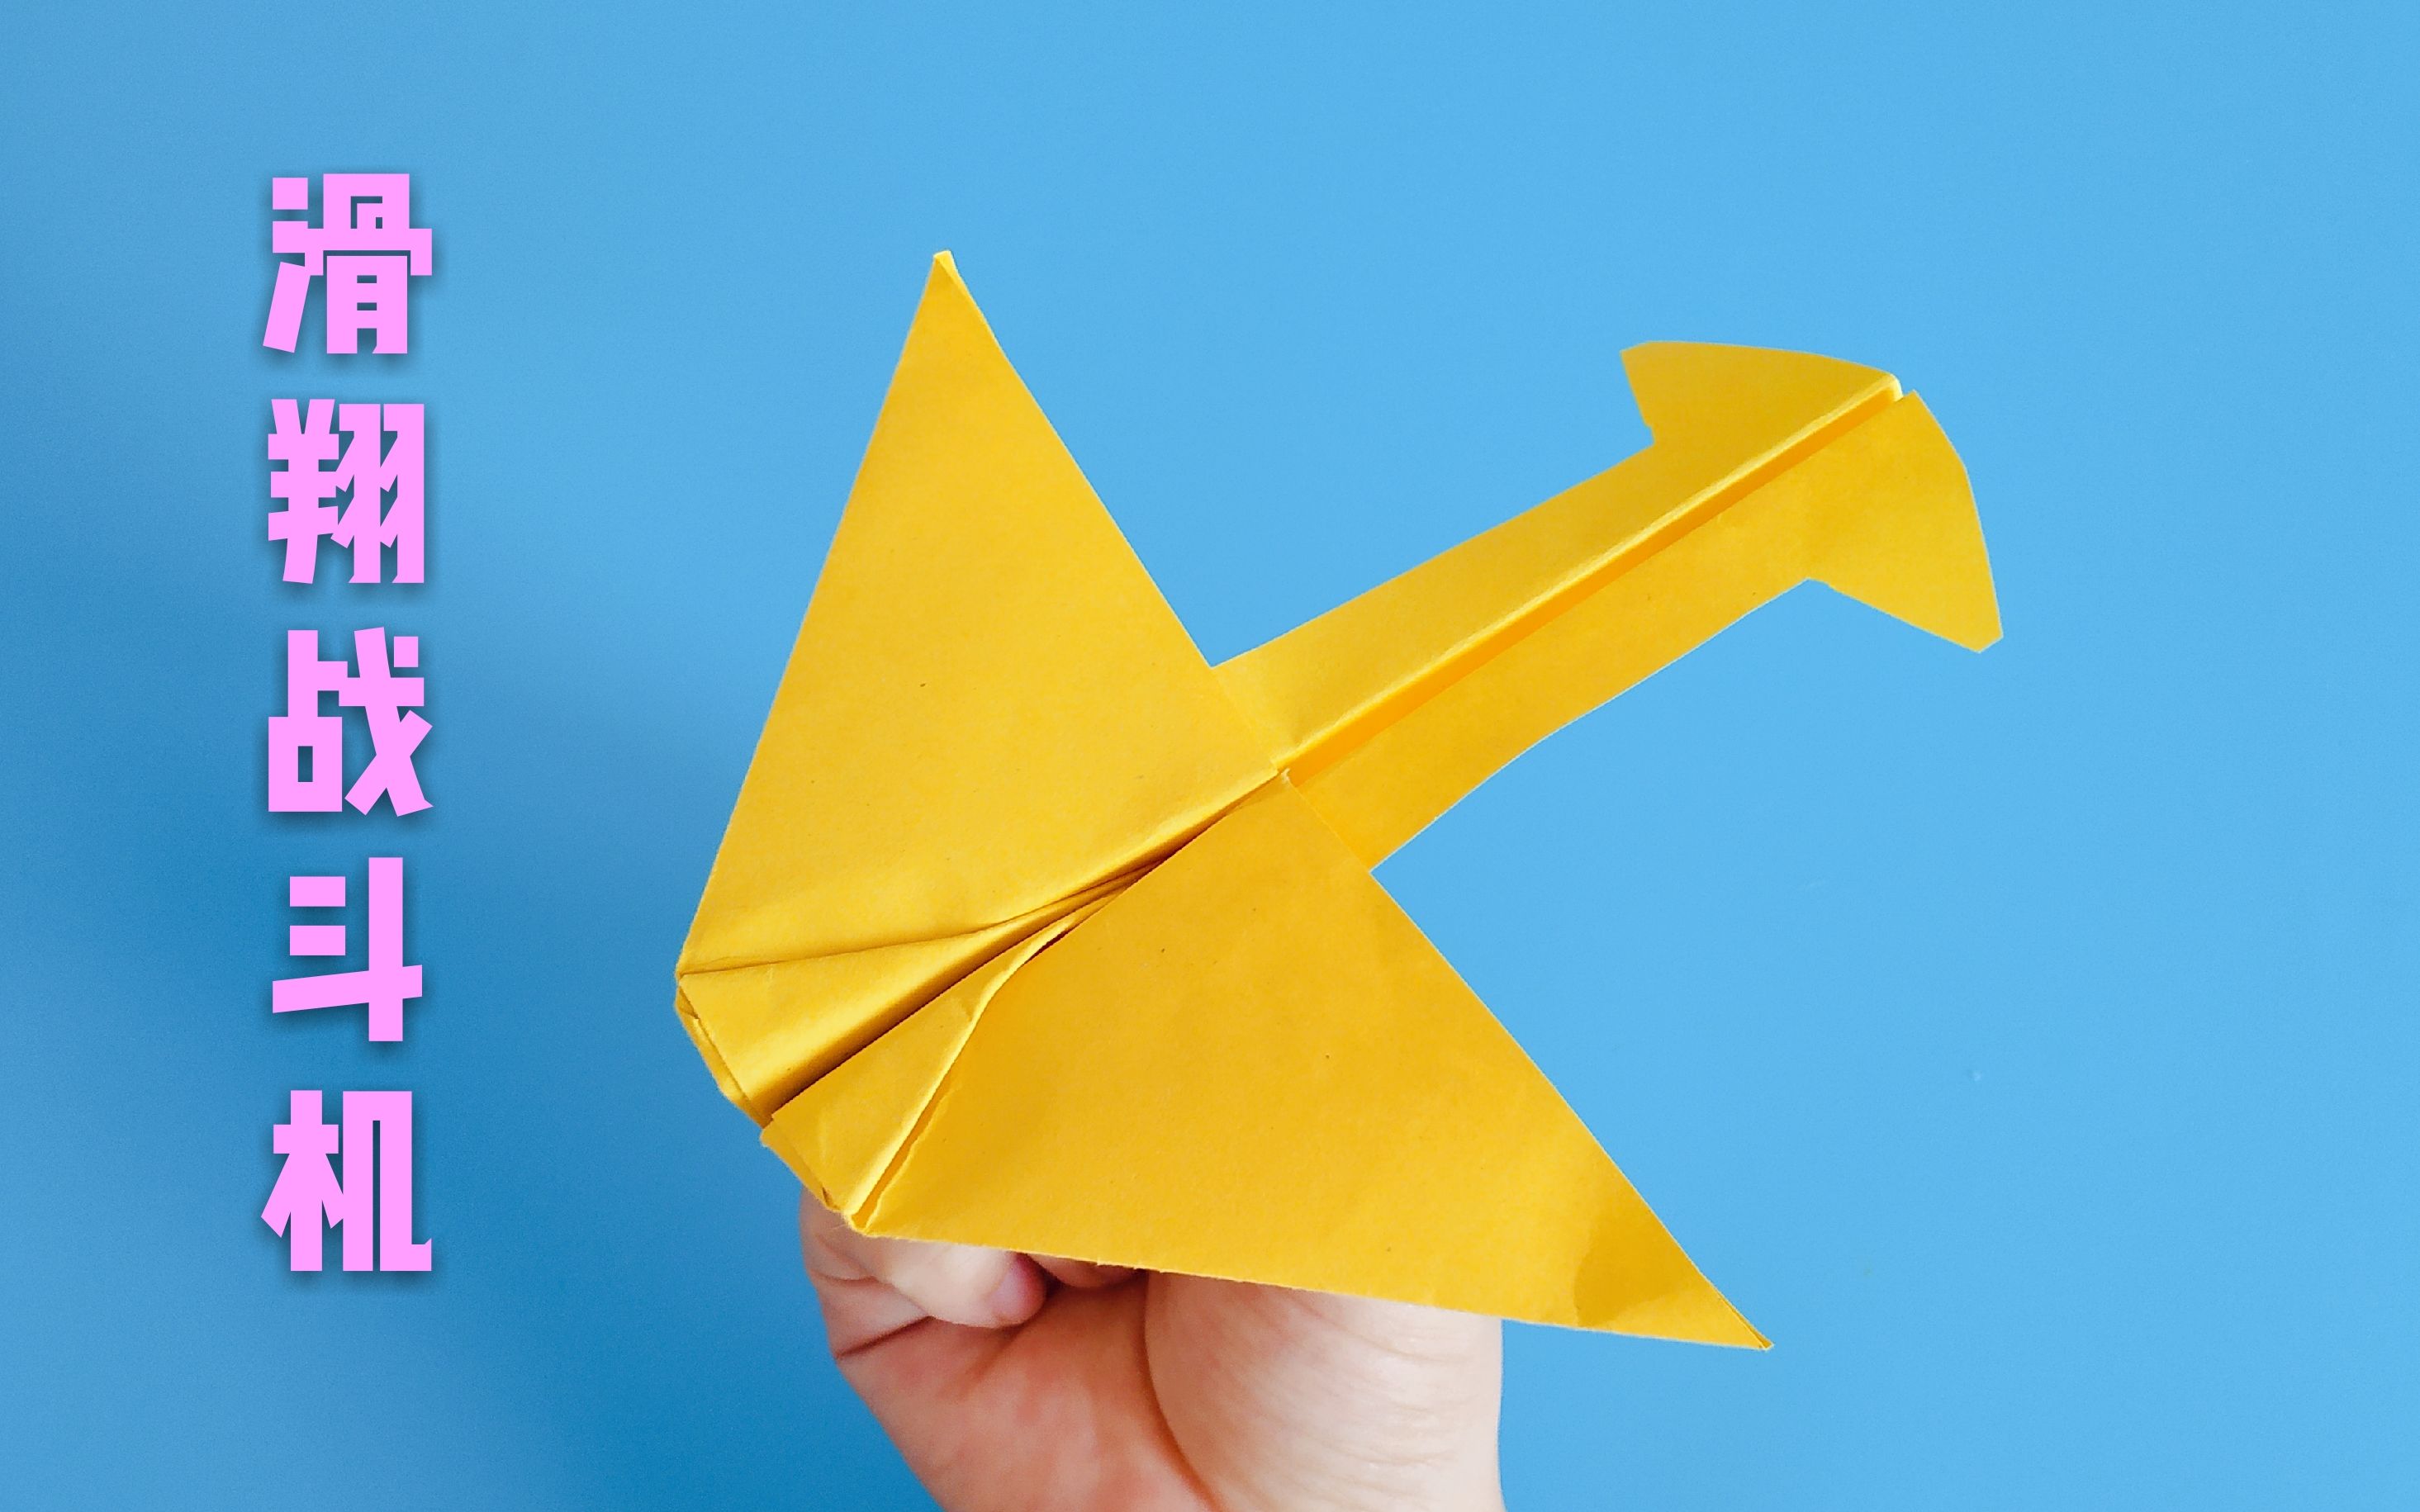 【折纸教程】简单折纸:滑翔战斗机纸飞机,给小朋友好玩又有面